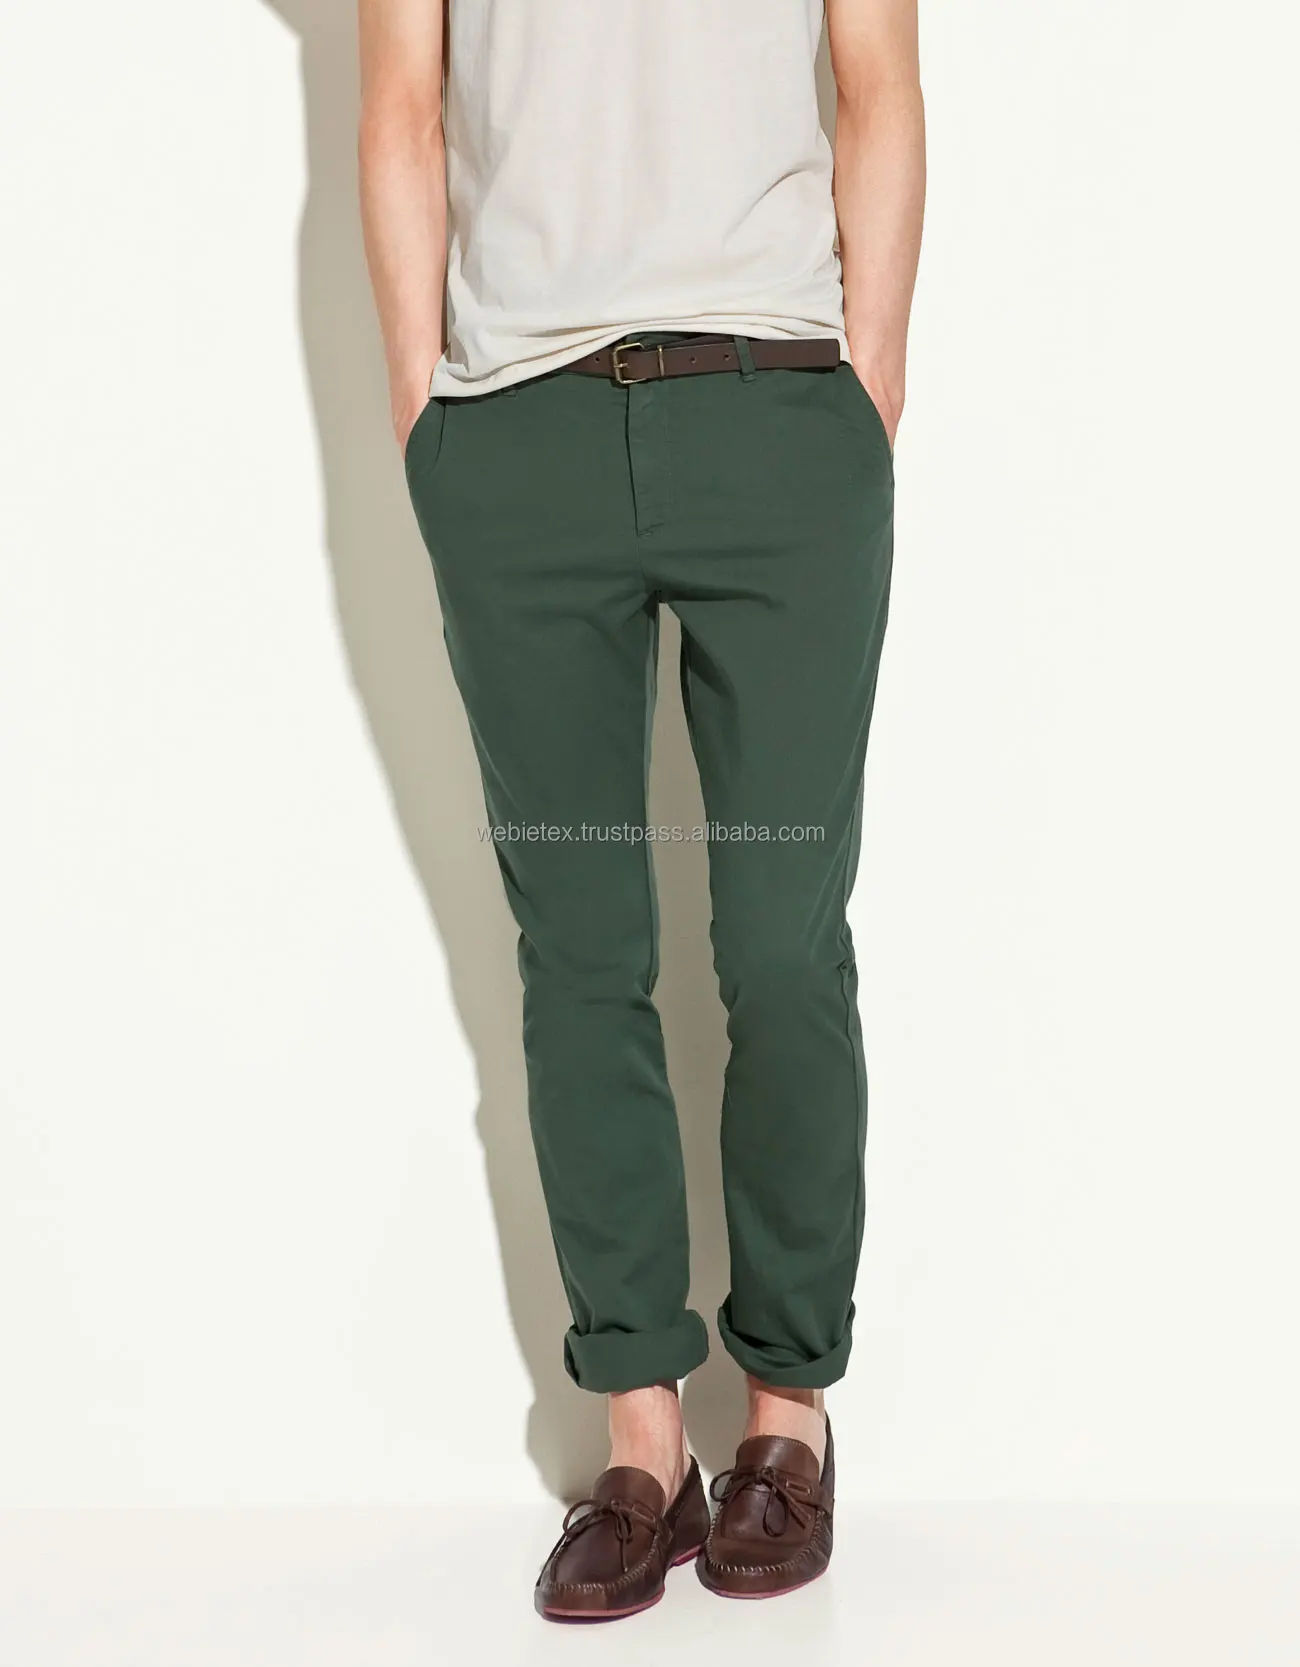 mens green chino pants